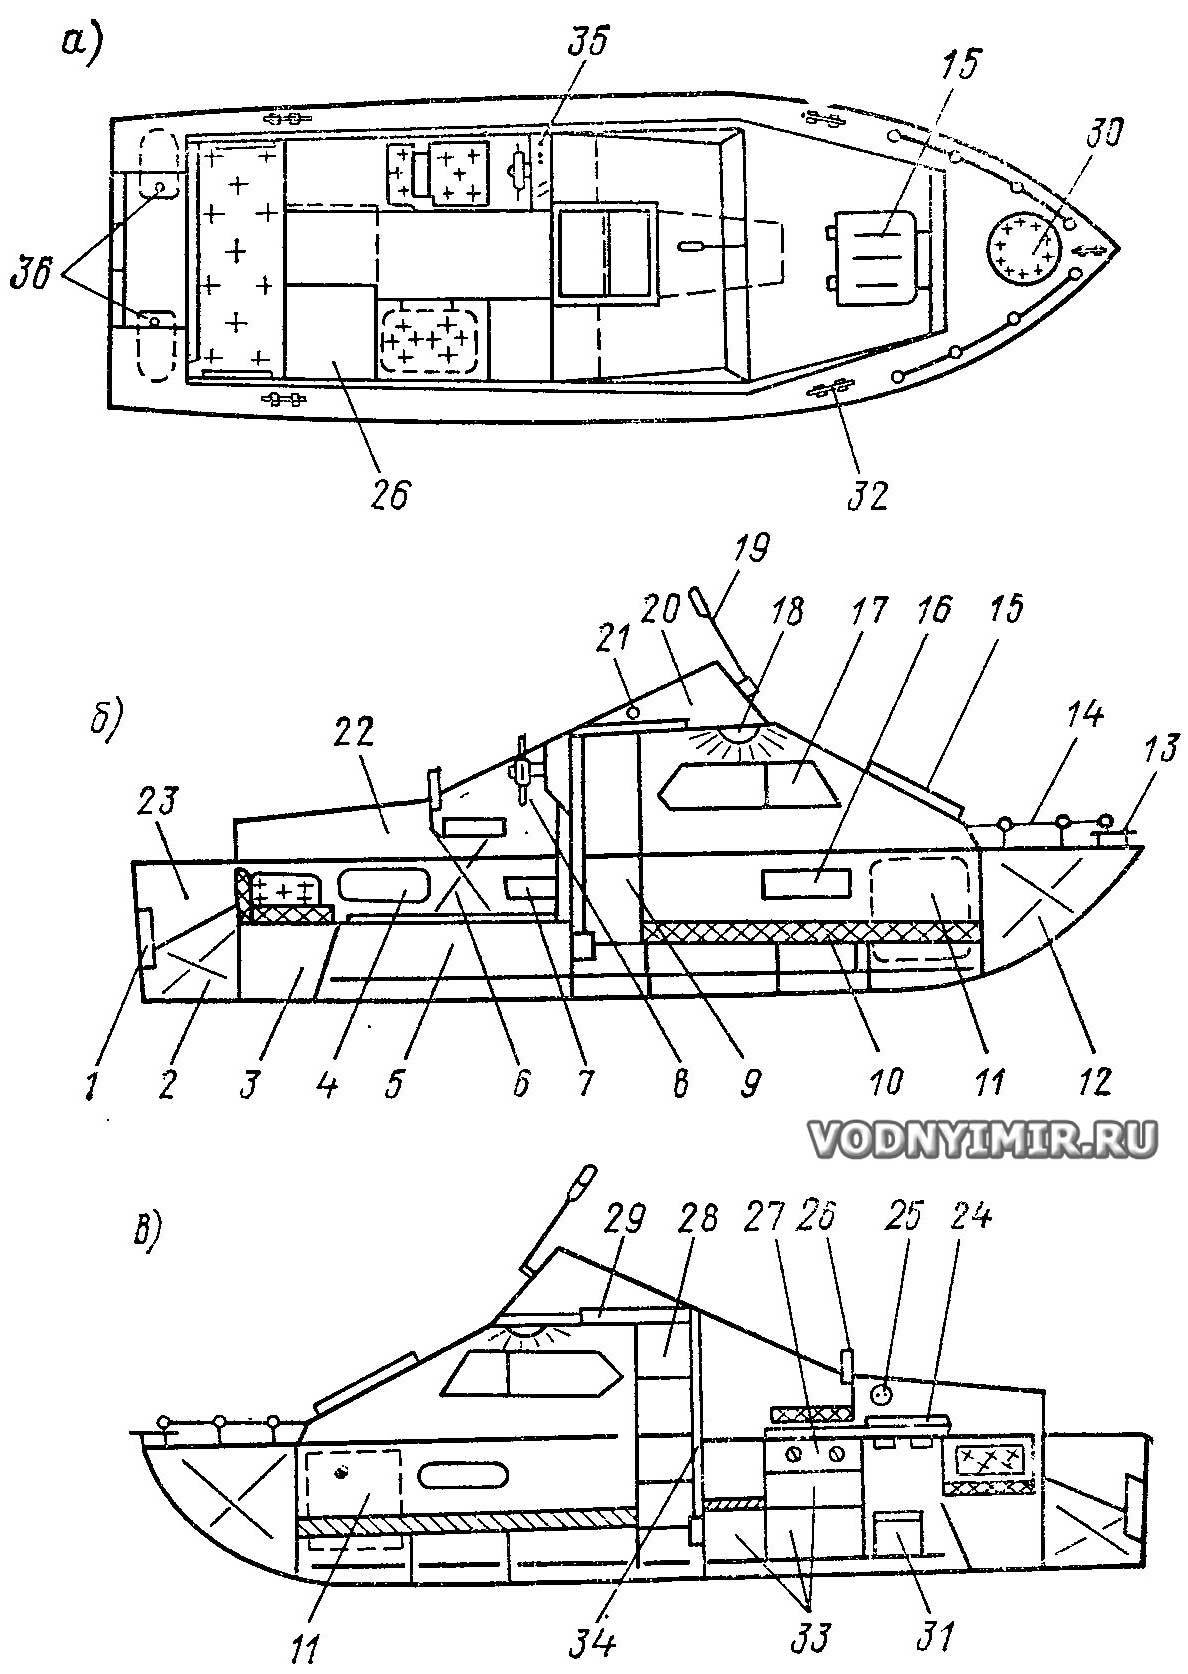 Лодка прогресс 4 - технические характеристики, комплектация